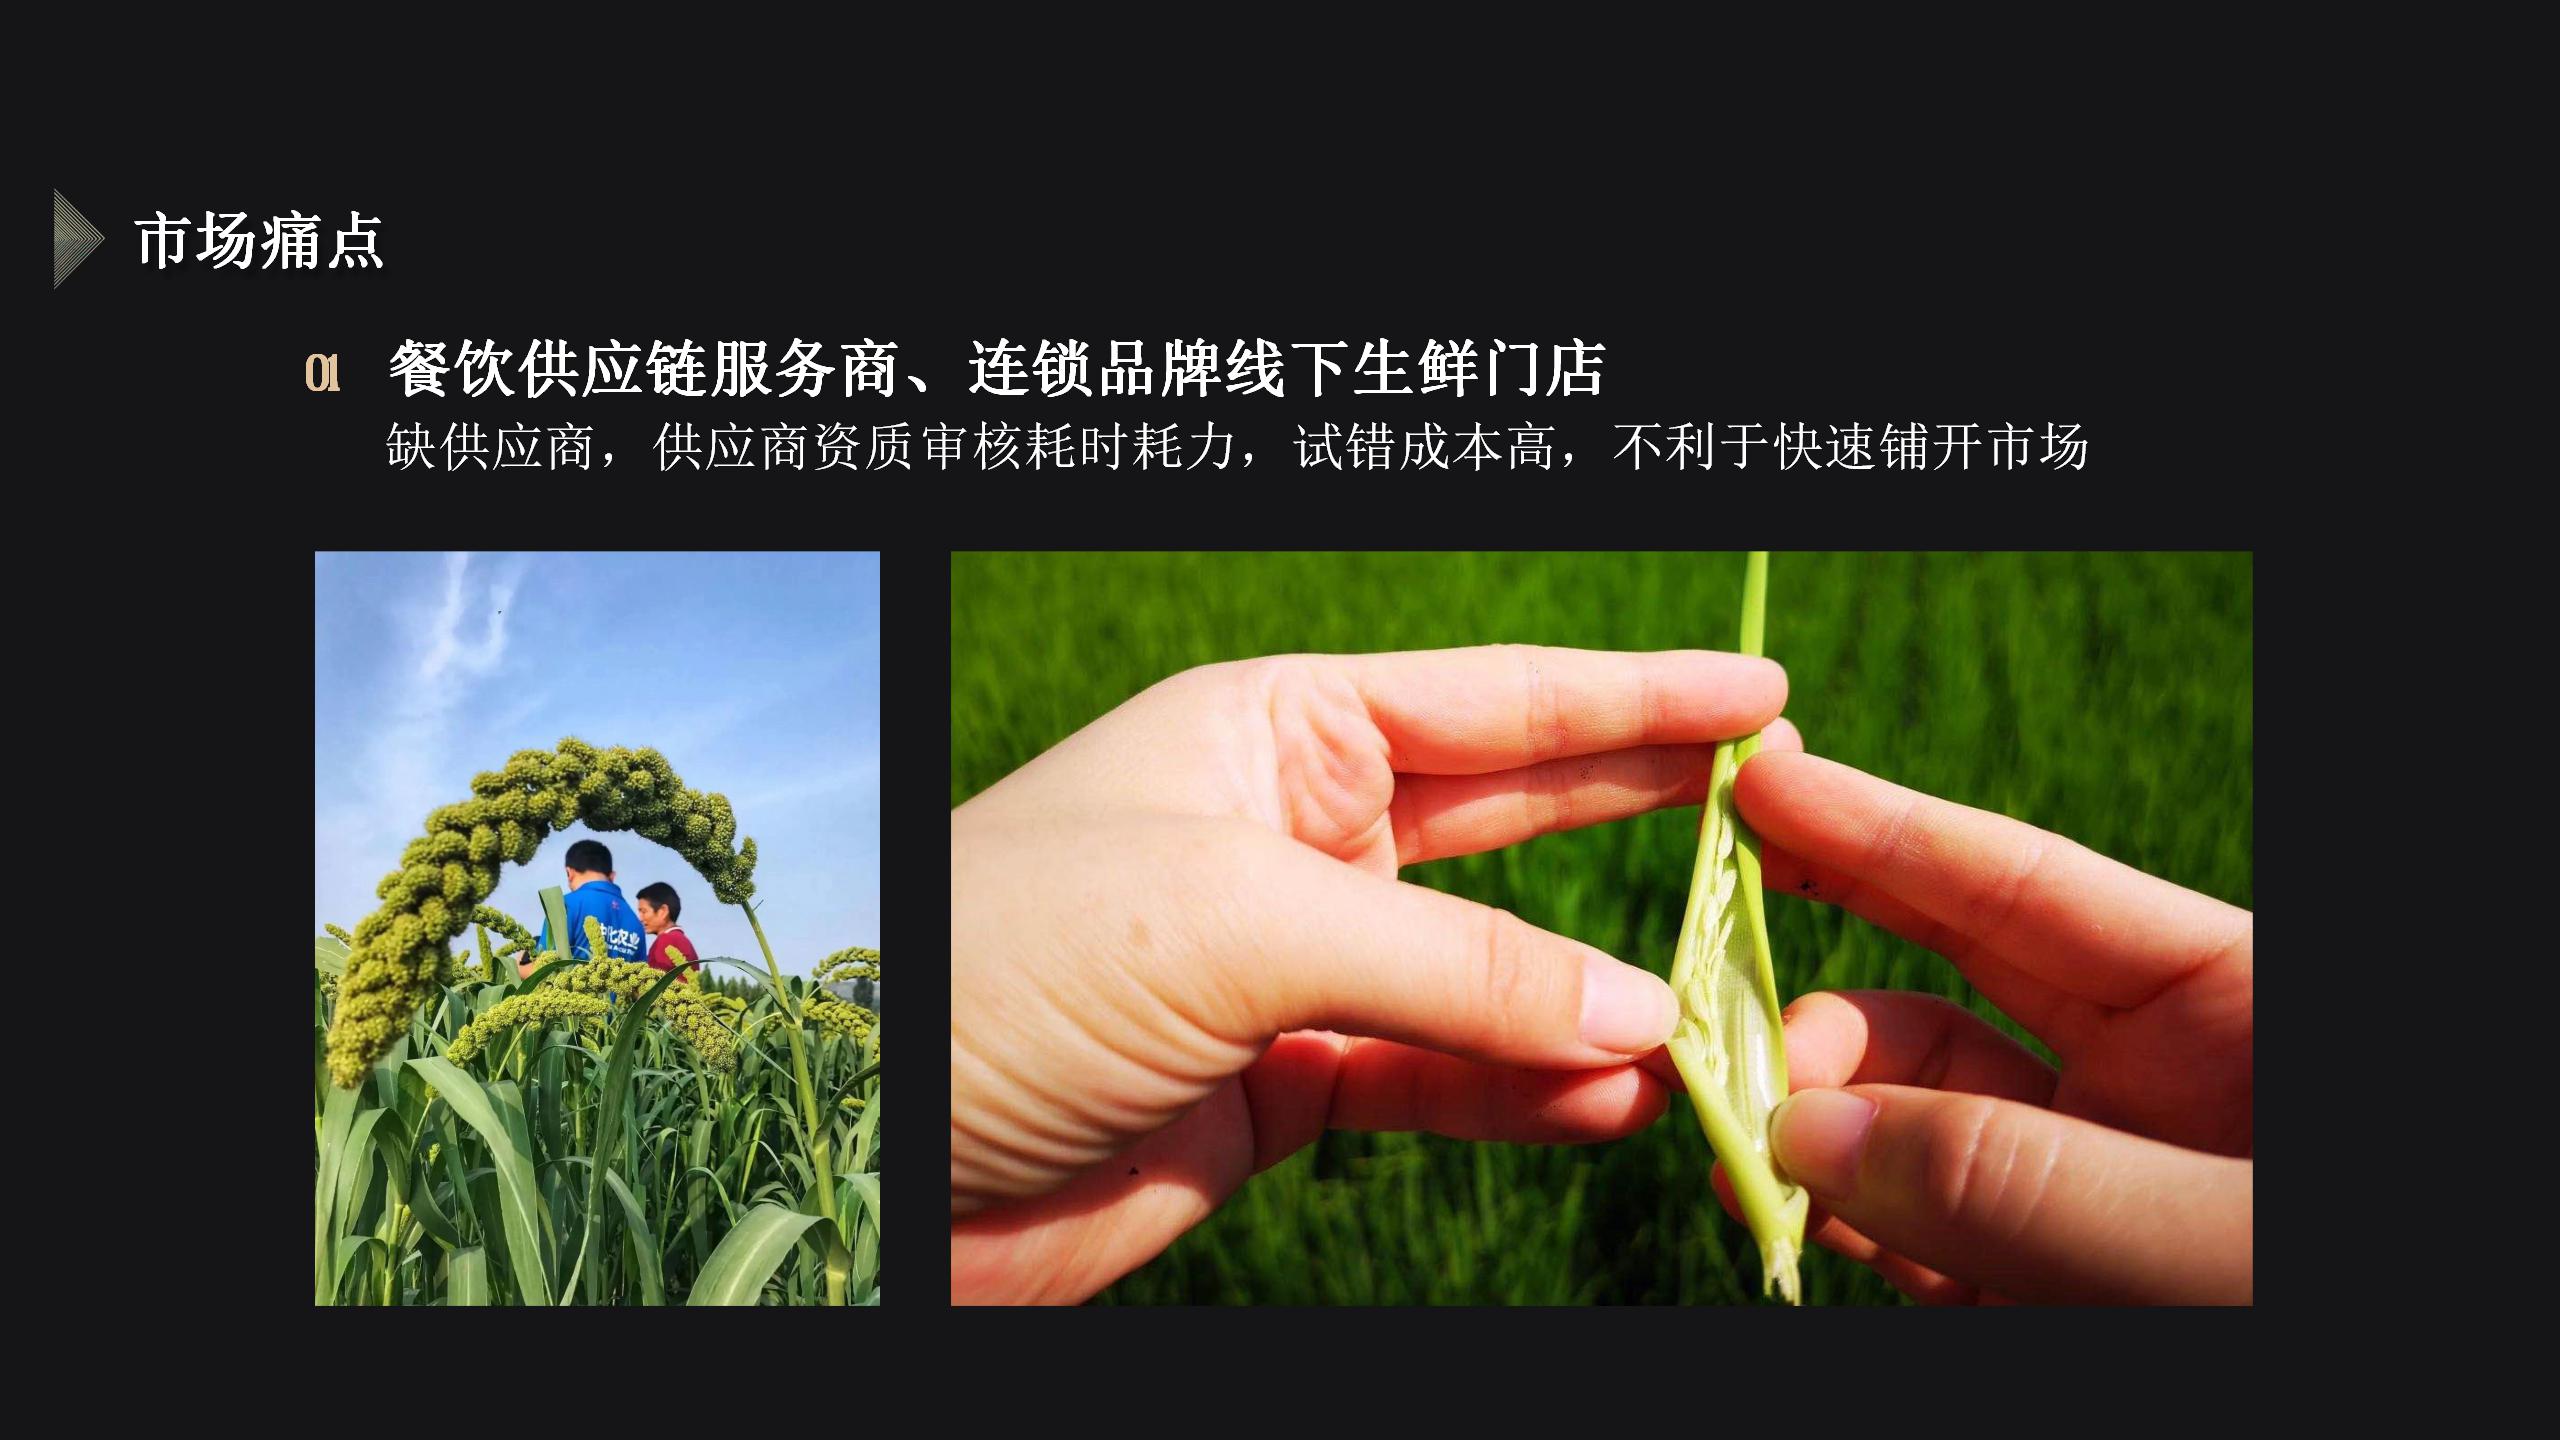 2020 中国乡村优品 · 全国知名采购商资源对接峰会